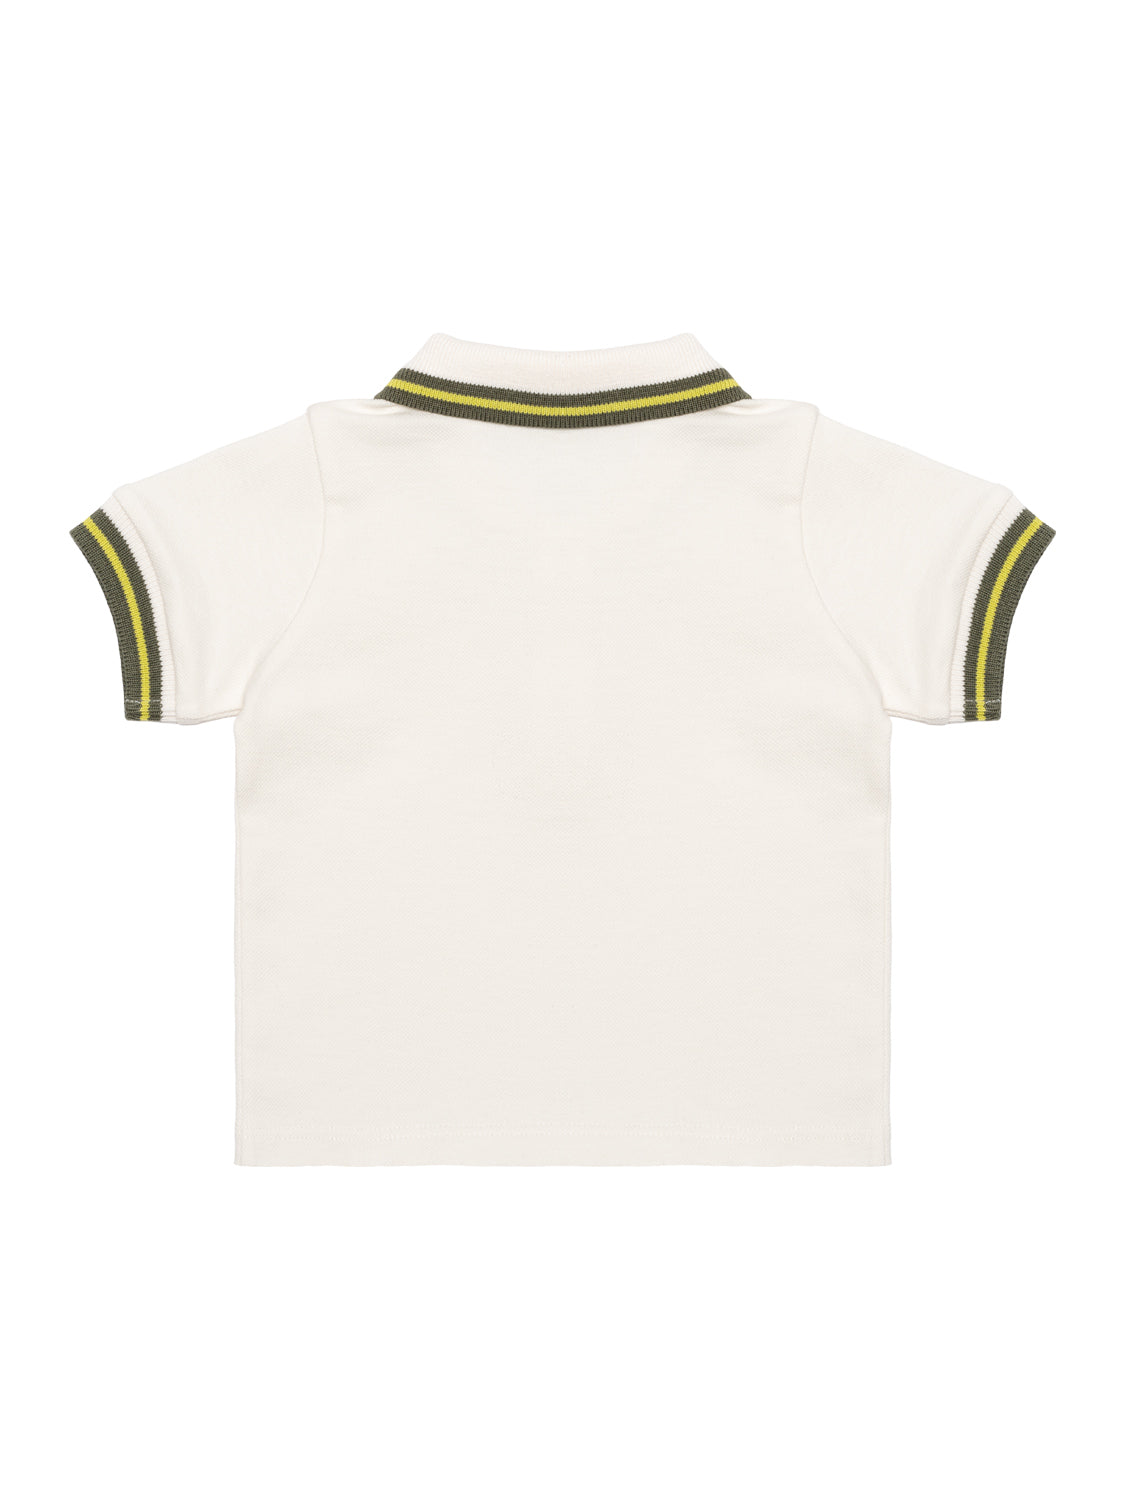 Poloshirt und Shorts im Set - Off White/Grün